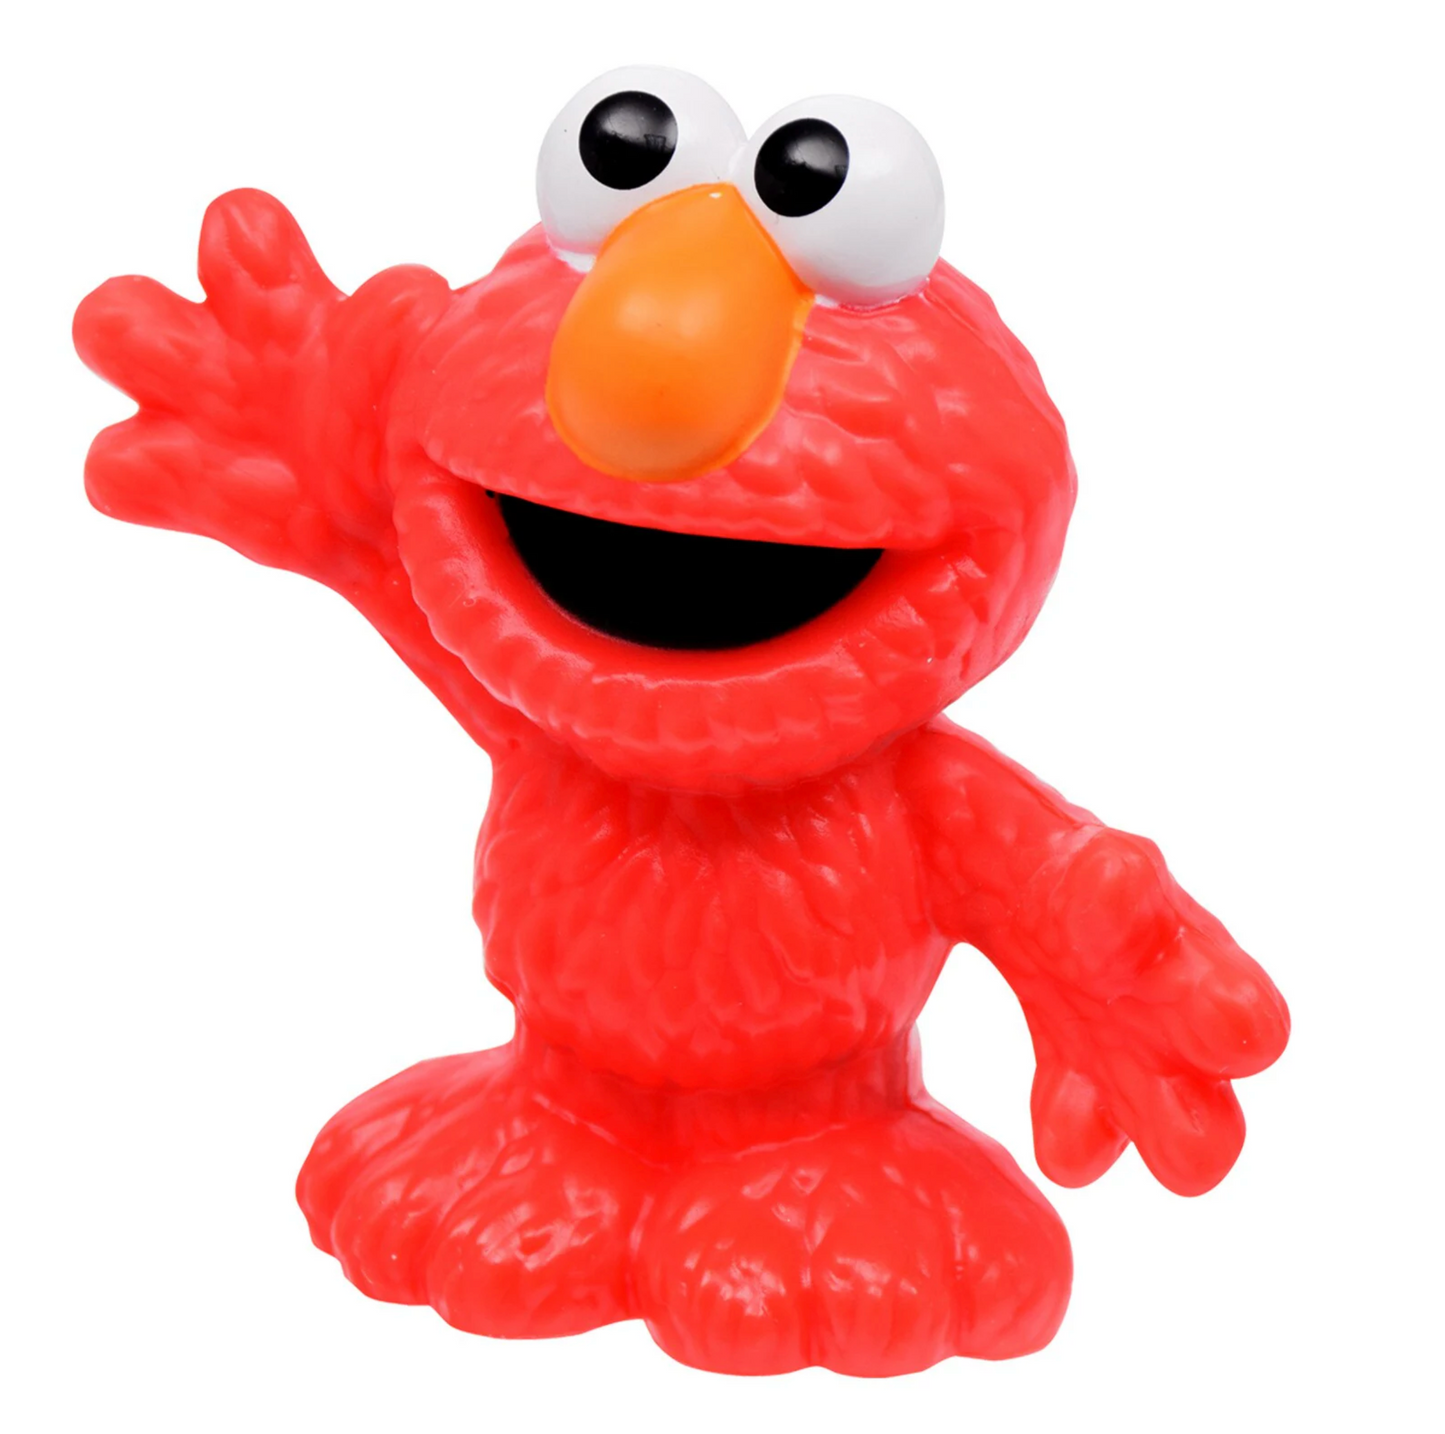 Sesamstraße "Cute & Collectible" Elmo, Oscar, Grobi, Krümelmonster Hasbro (2022)